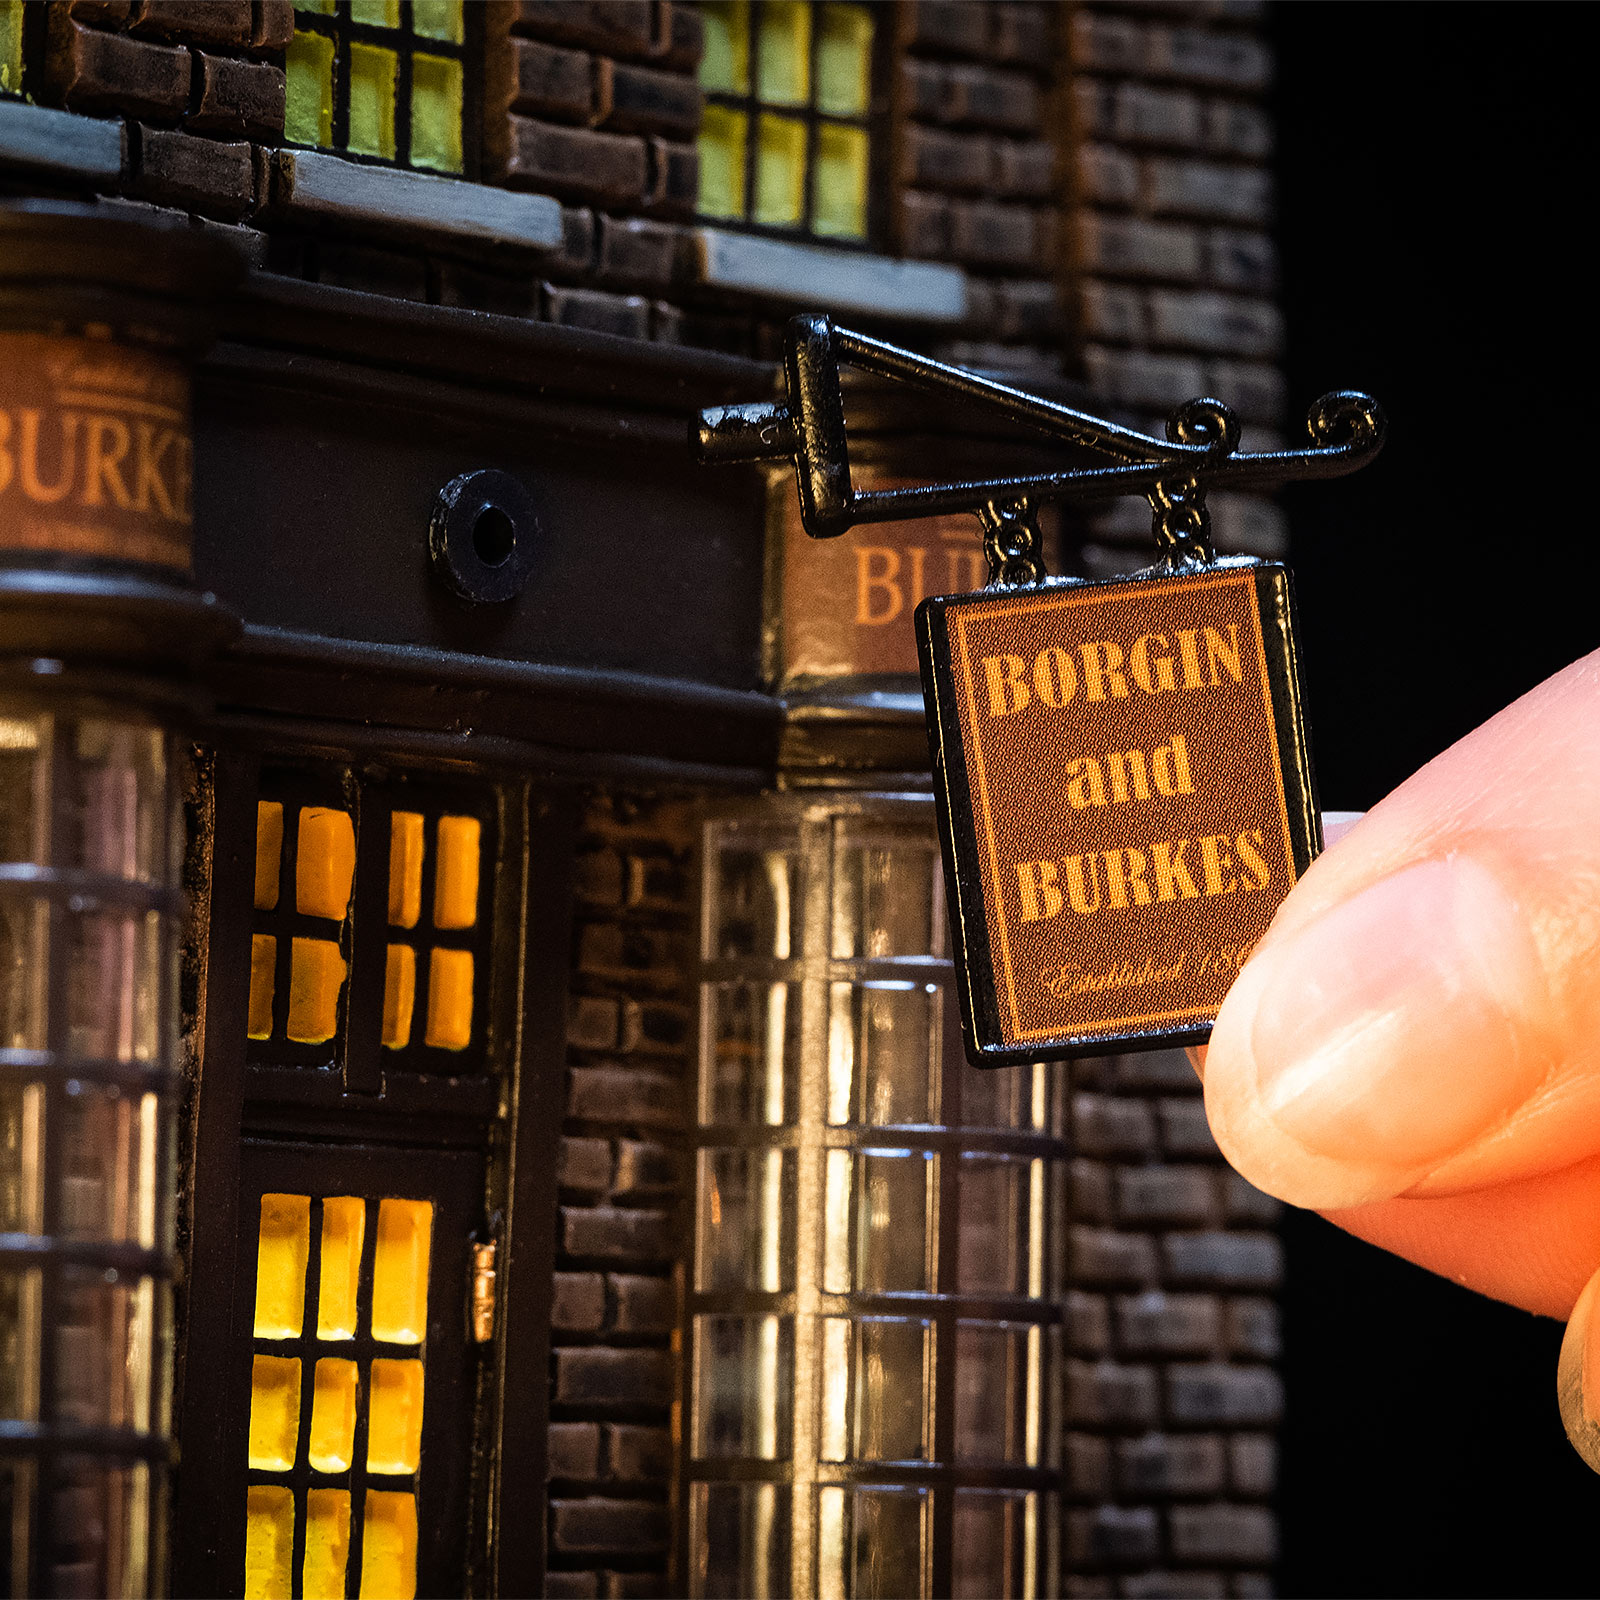 Borgin & Burkes Shop Miniatuur Replica met Verlichting - Harry Potter